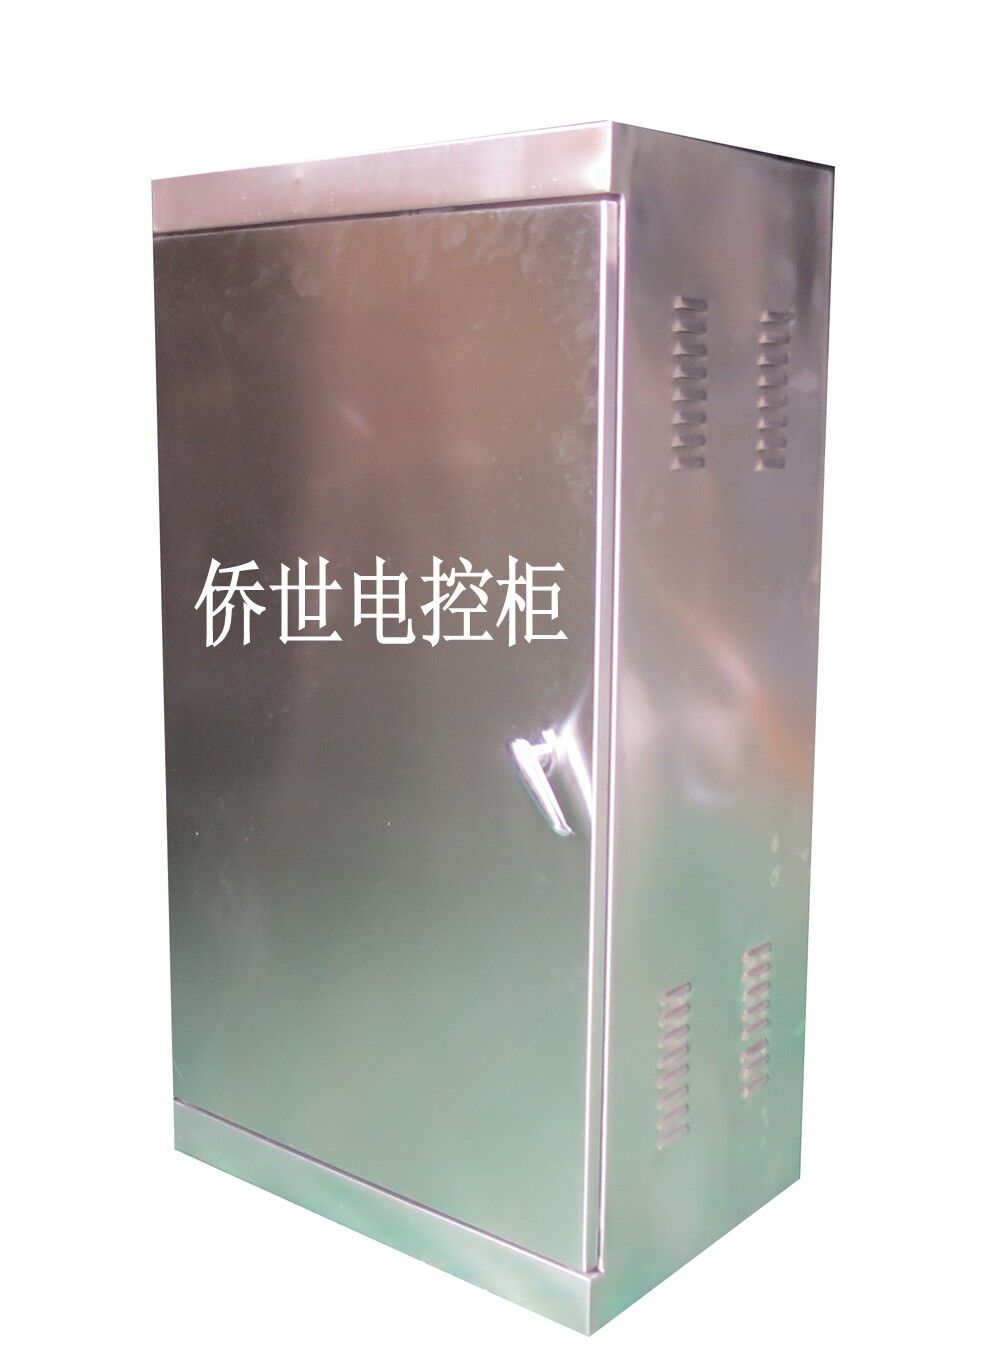 广州不锈钢电控柜厂家――购买有品质的不锈钢电控柜优选上海侨世电气